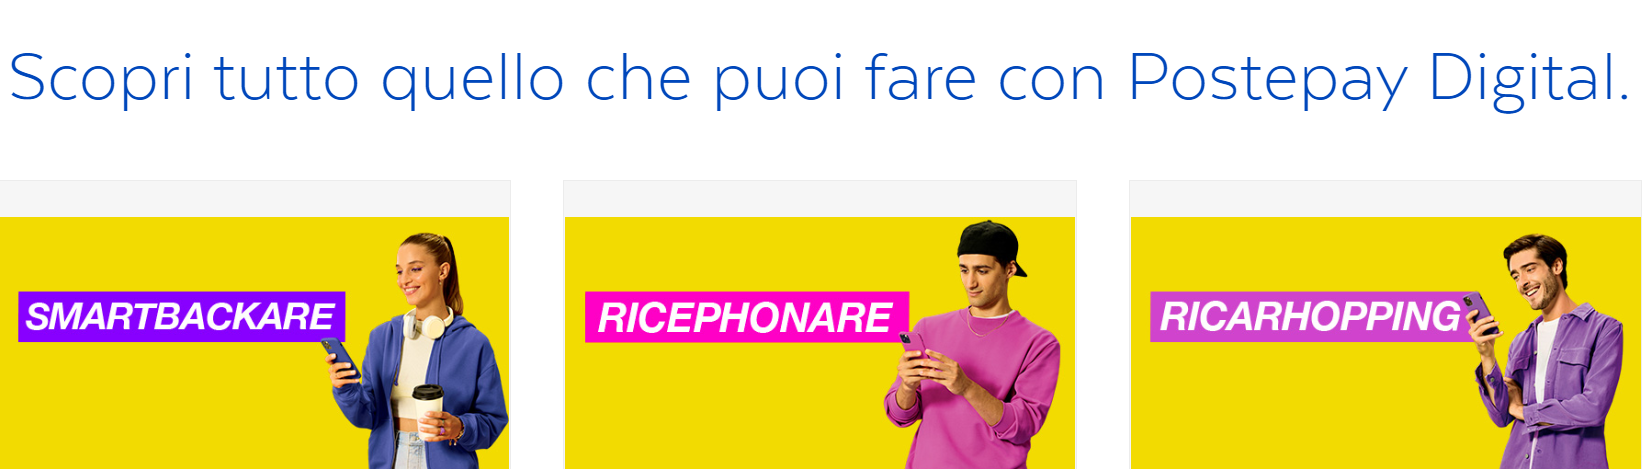 Immagine della campagna di Poste Italiana: sotto la scritta “Scopri tutto quello che puoi fare con Postepau Digital” ci sono tre persone con il telefonino in mano e le scritte SMARTBACKARE, RICEPHONARE e RICARHOPPING